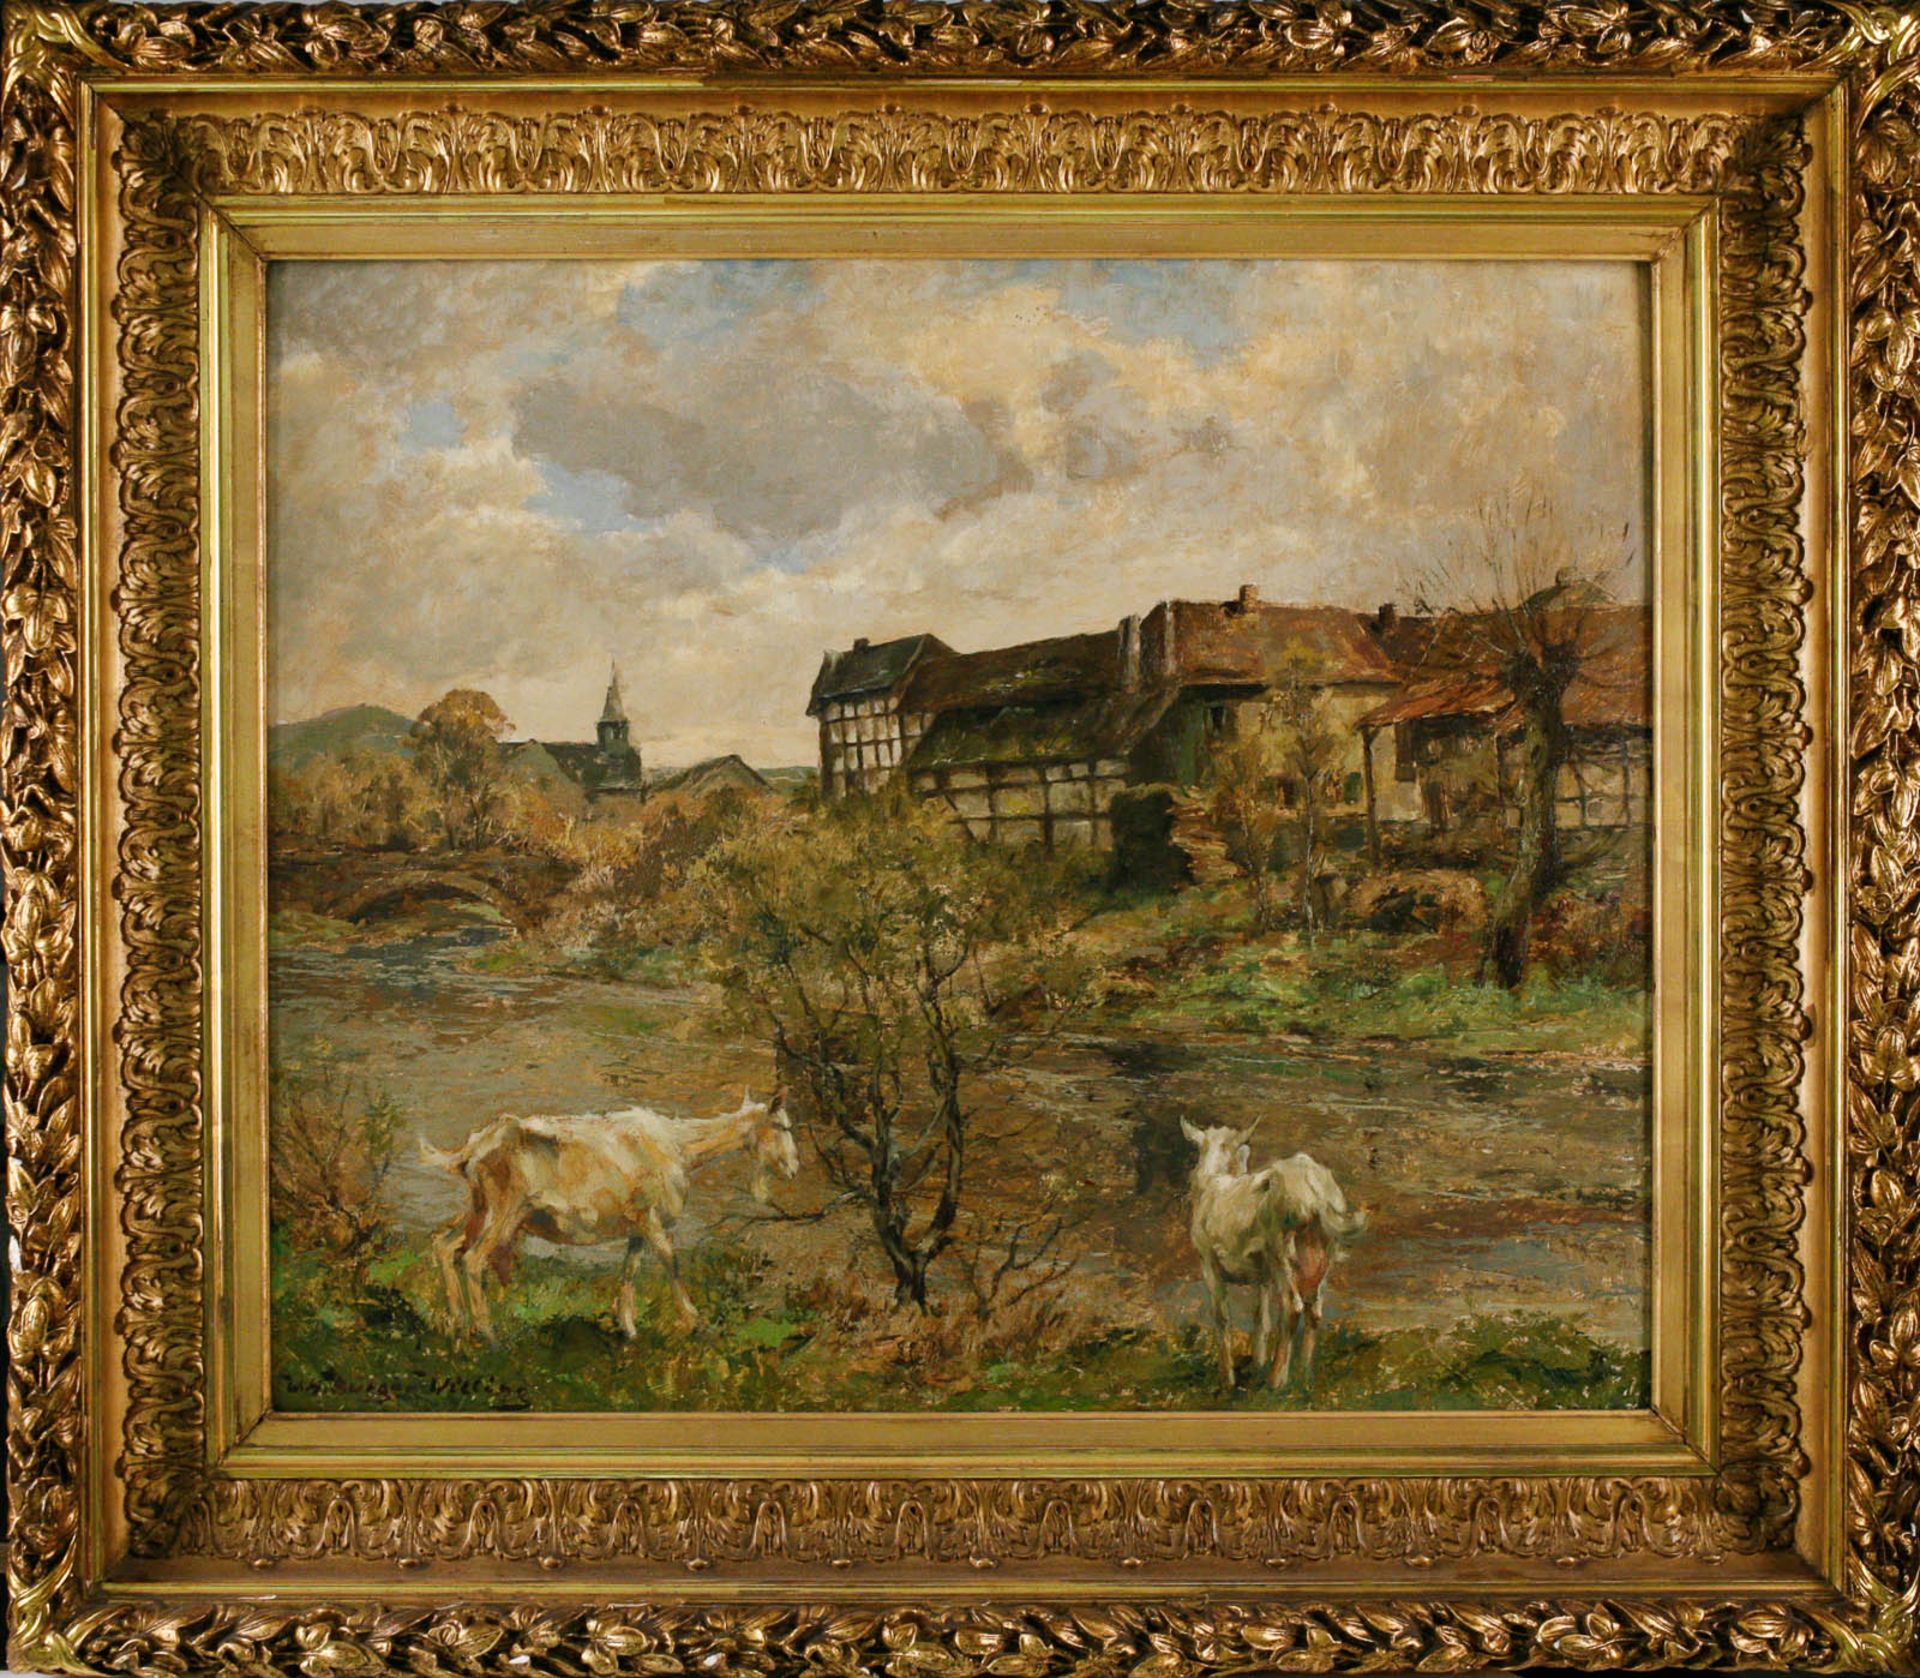 GEMÄLDE Flussszene mit Ziege vor Dorf  - Bild 2 aus 2